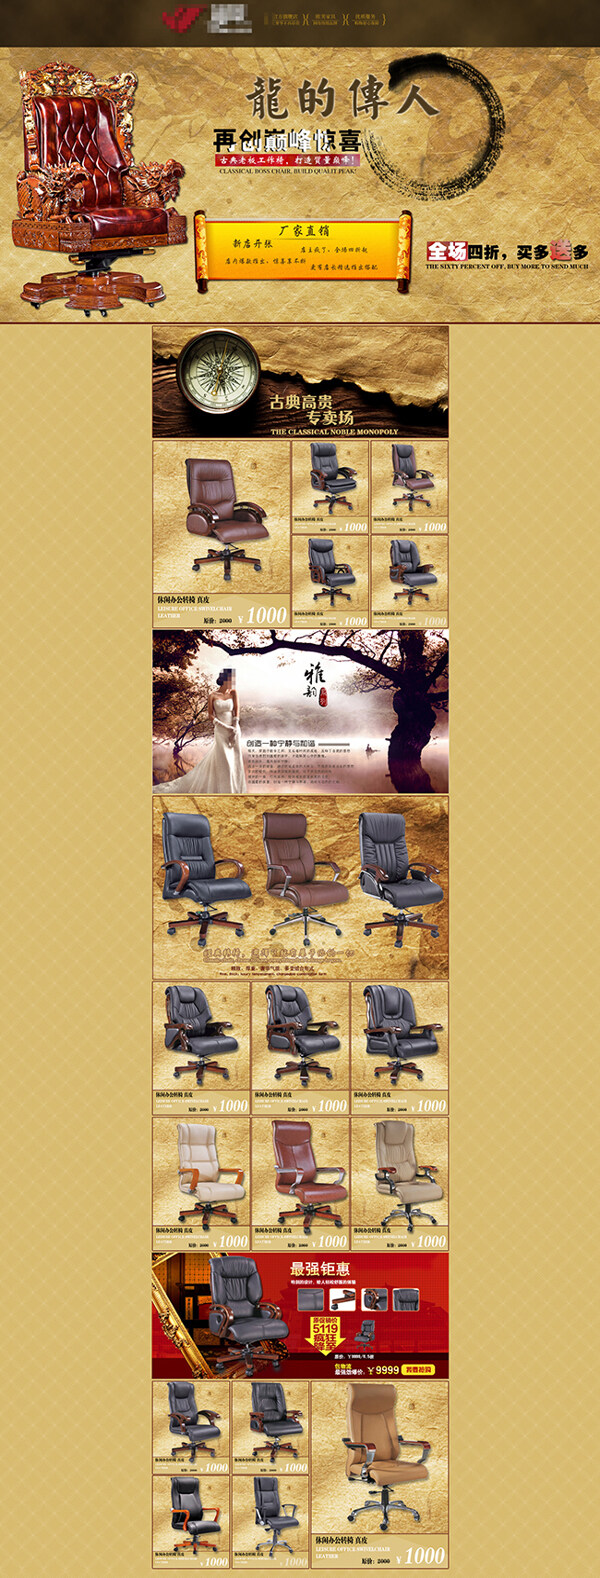 高端实木座椅活动首页展示海报